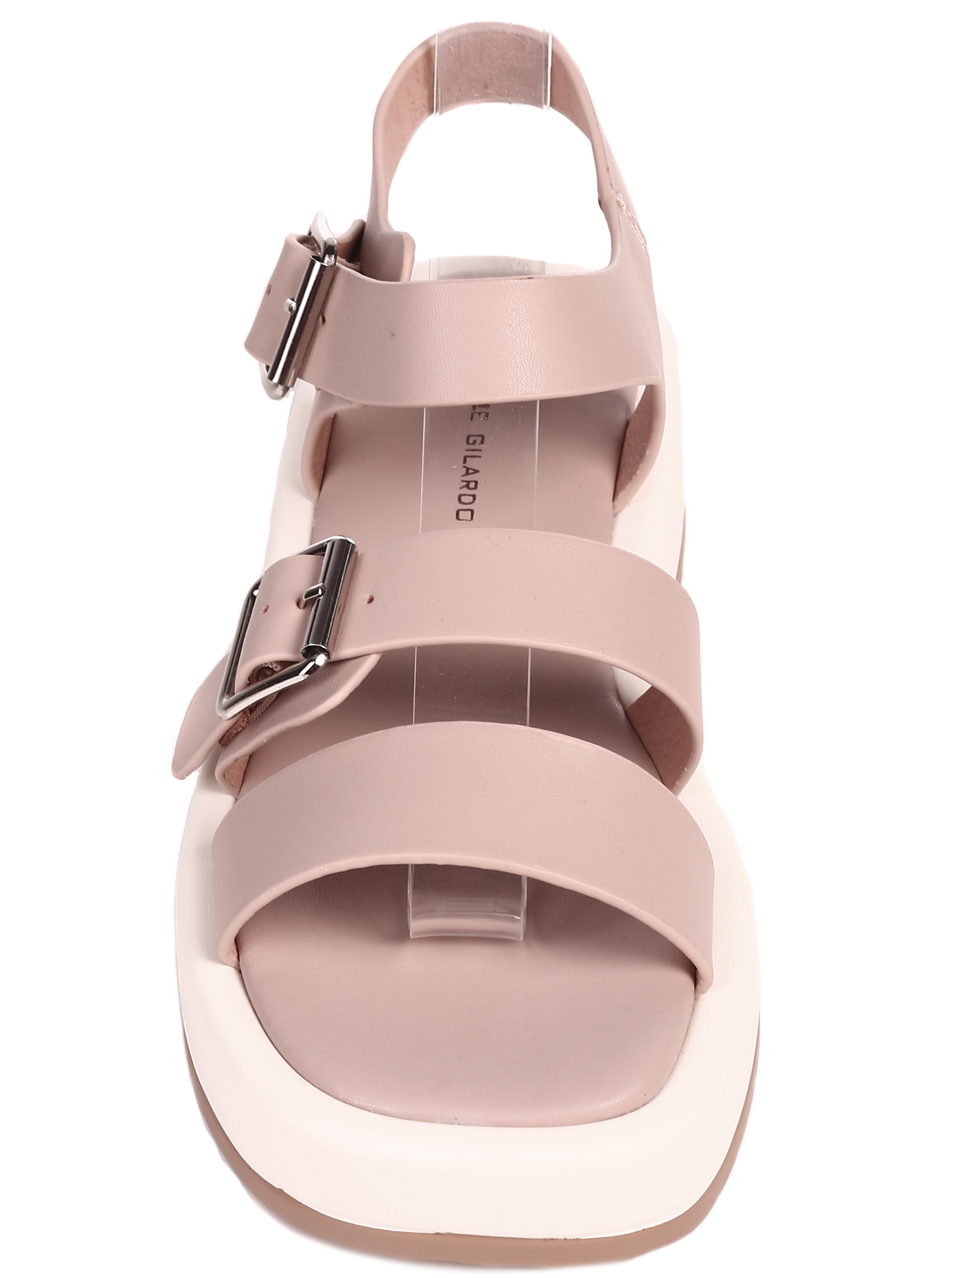 Ежедневни дамски сандали на платформа от естествена кожа 4AF-22184 pink